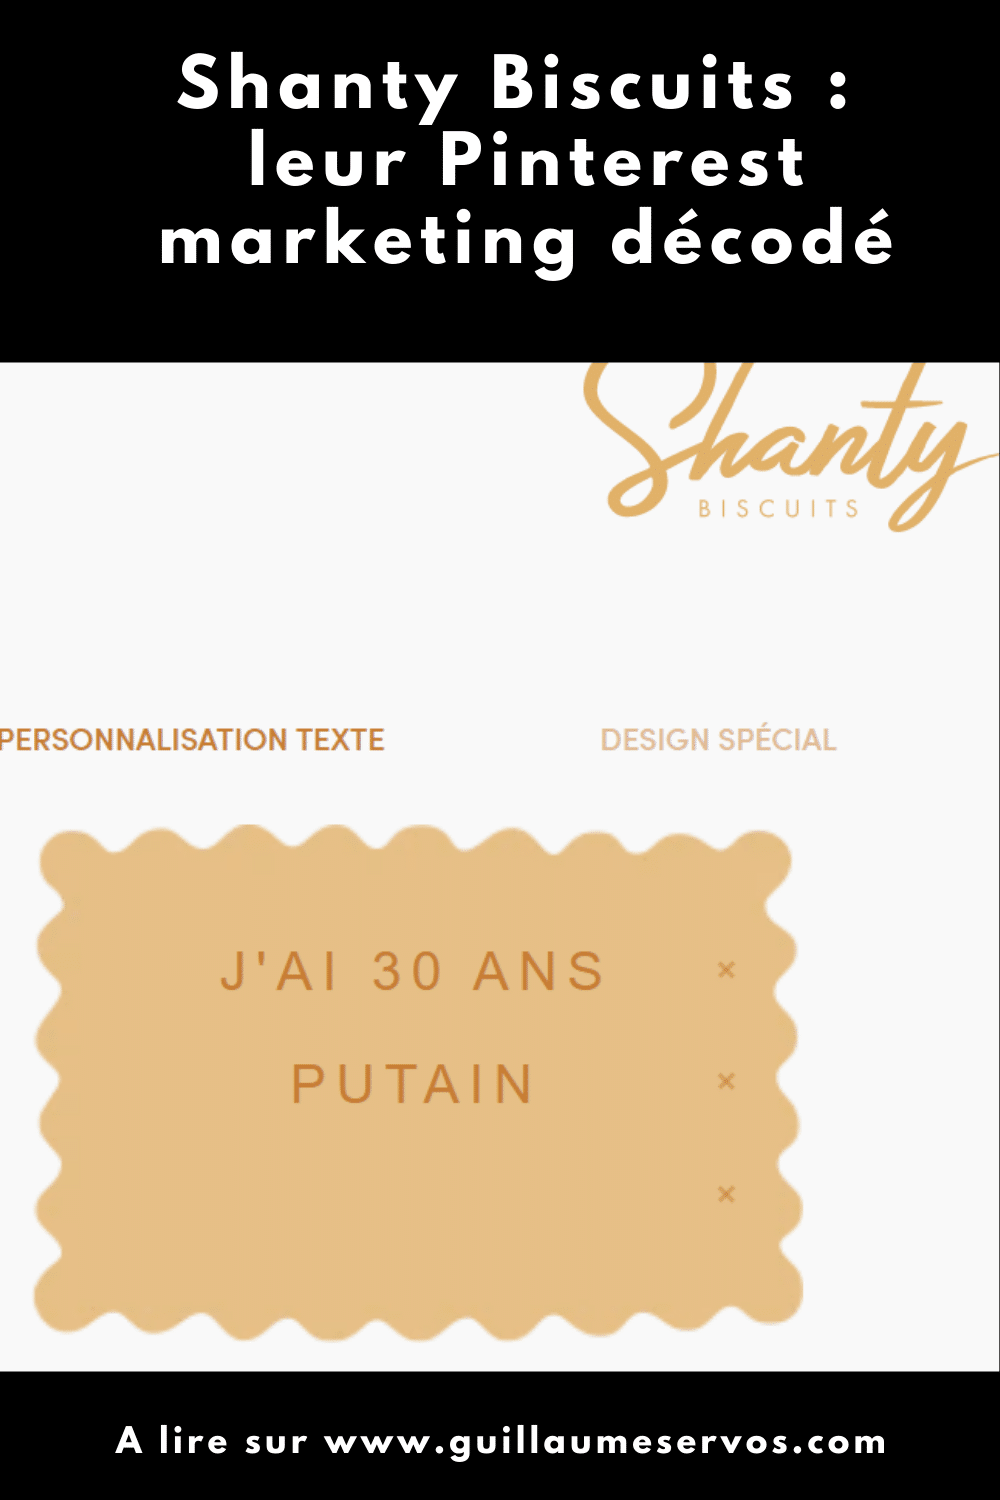 Comment Shanty Biscuits utilise Pinterest pour son business ? Je décode le Pinterest marketing de la marque de biscuits personnalisés de Provence.